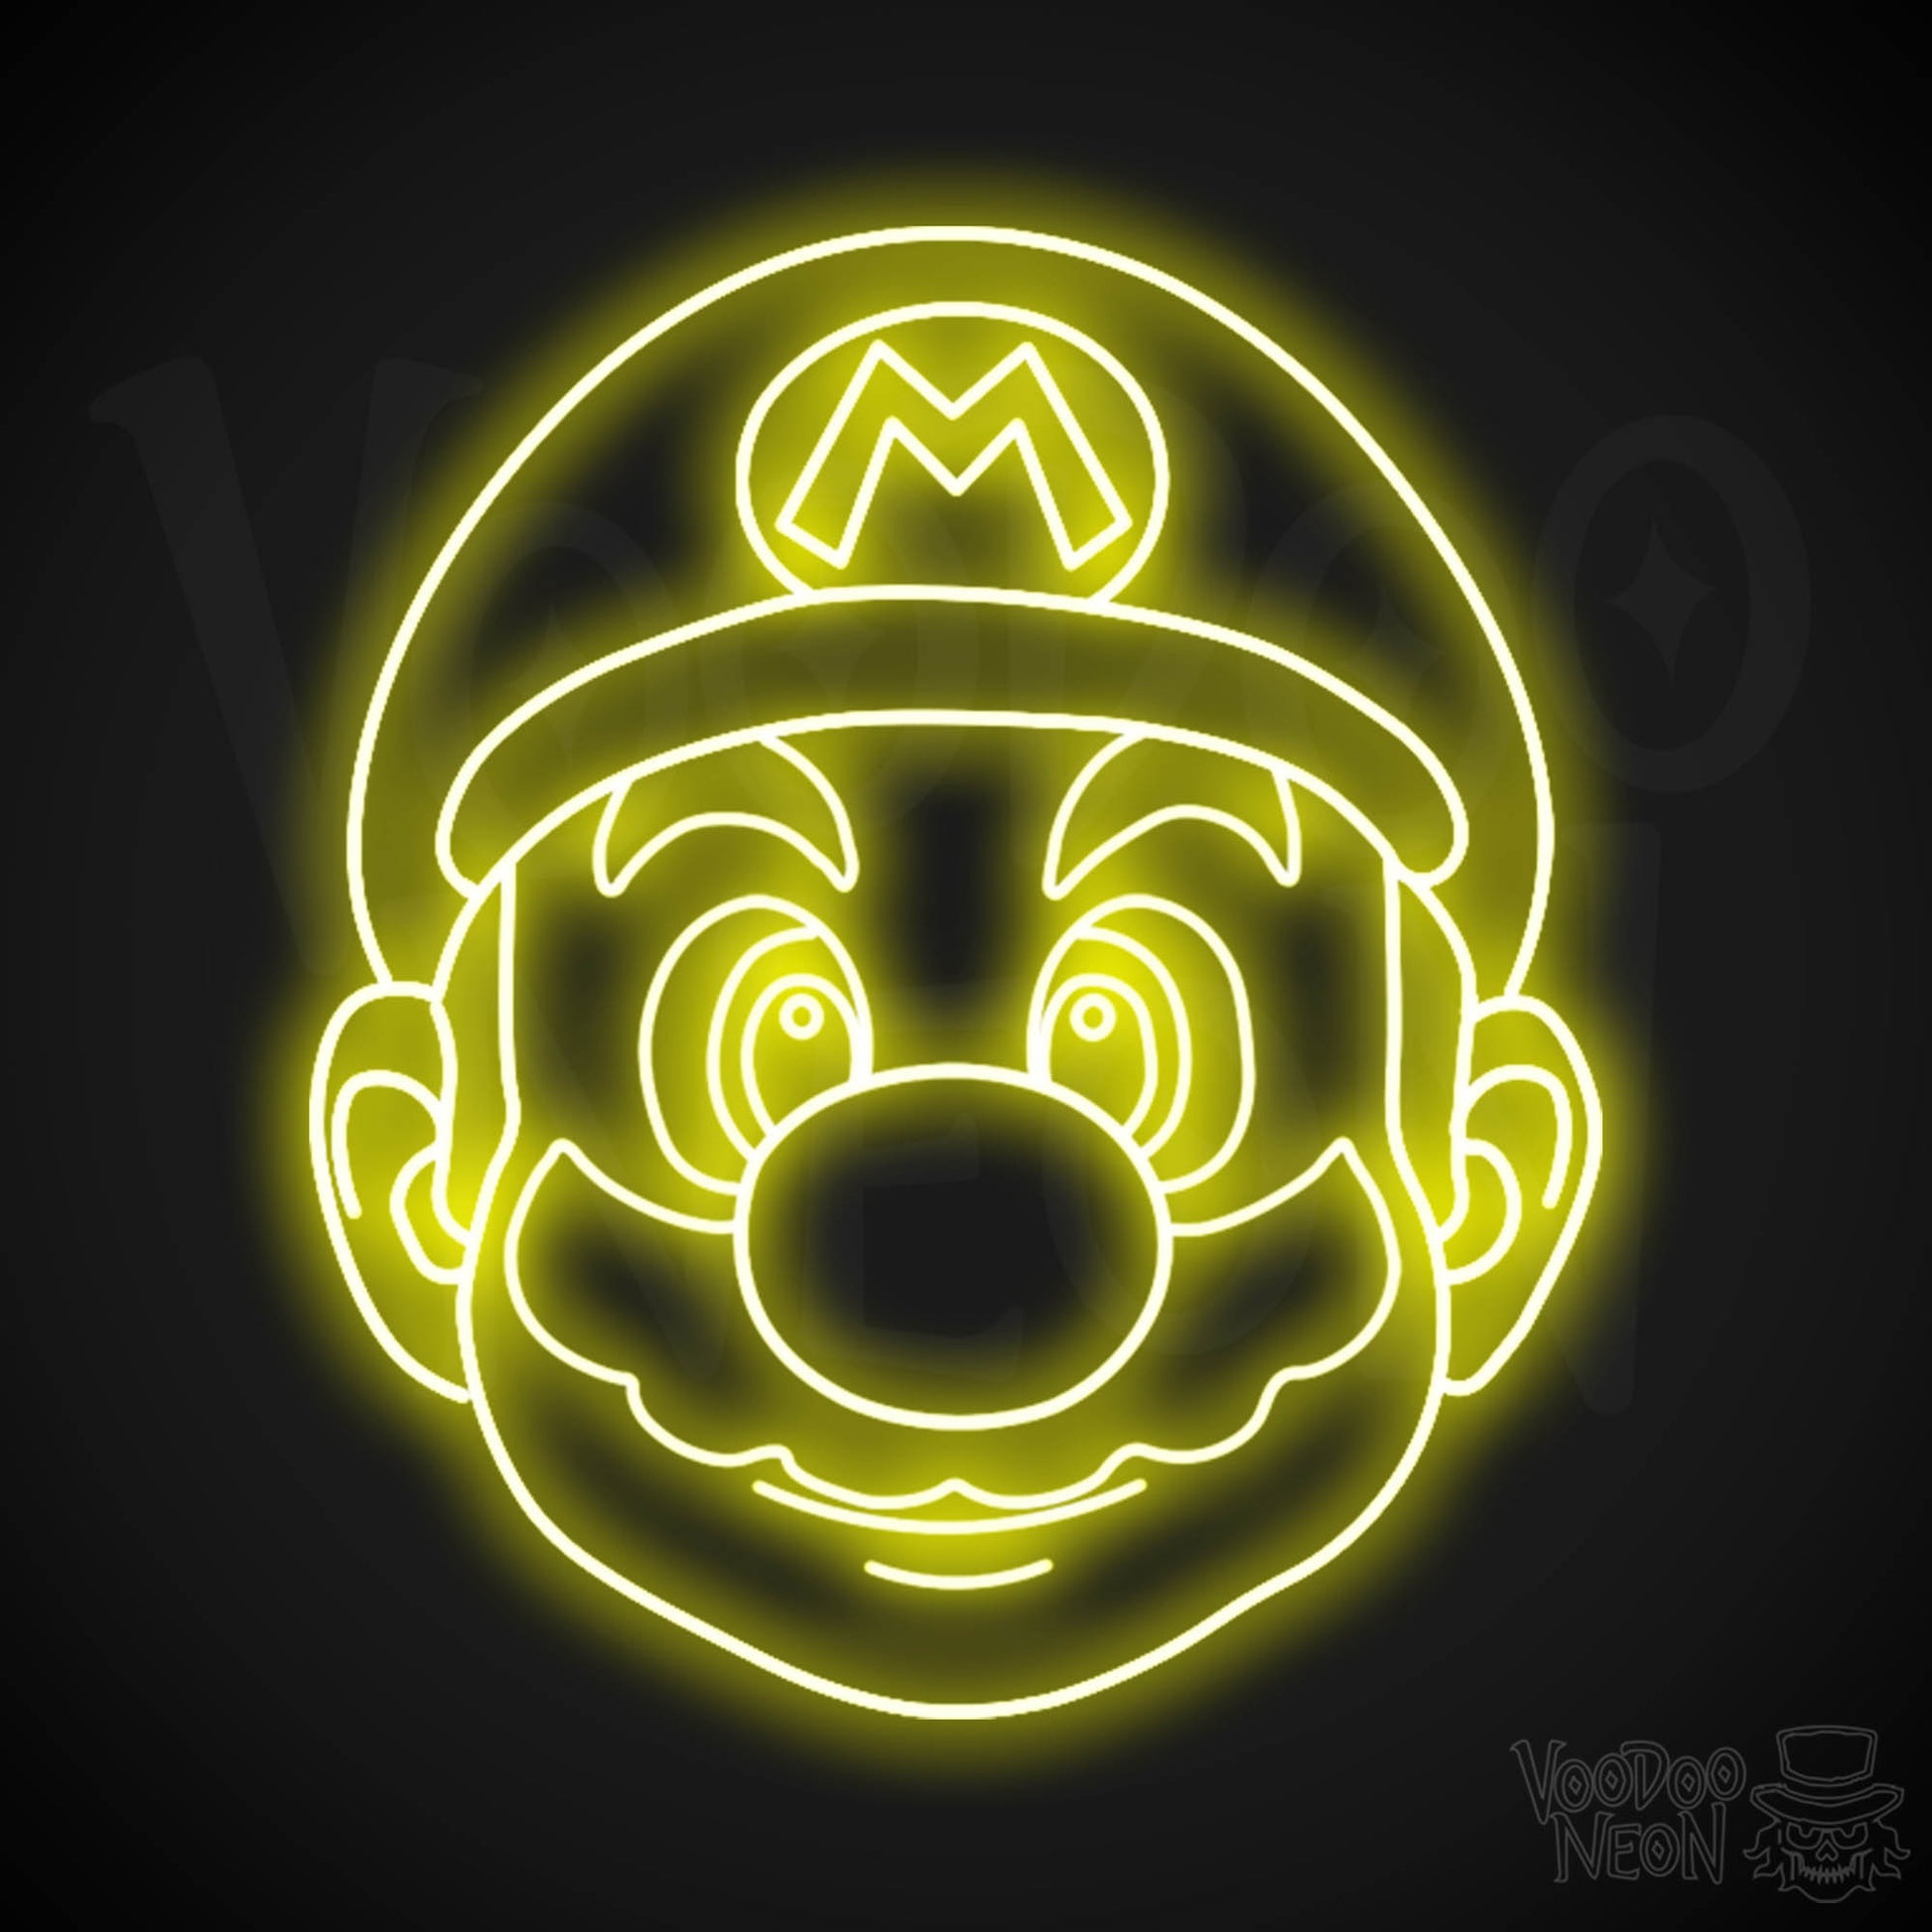 Mario Neon Sign - Mario Sign - Mario Wall Art - LED Neon Wall Art - Color Yellow